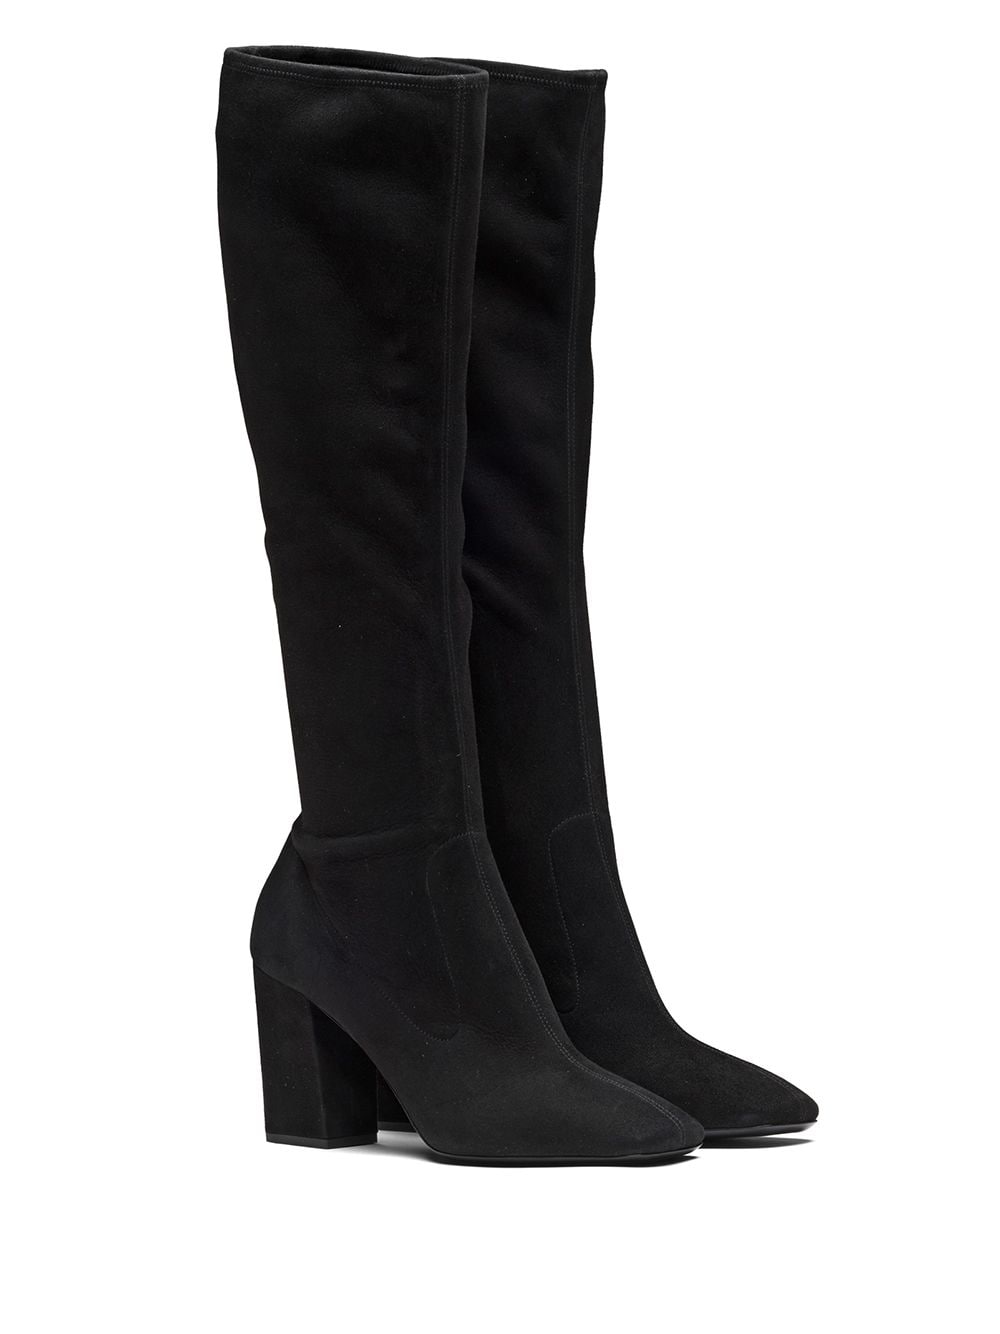 black leather mid heel knee high boots